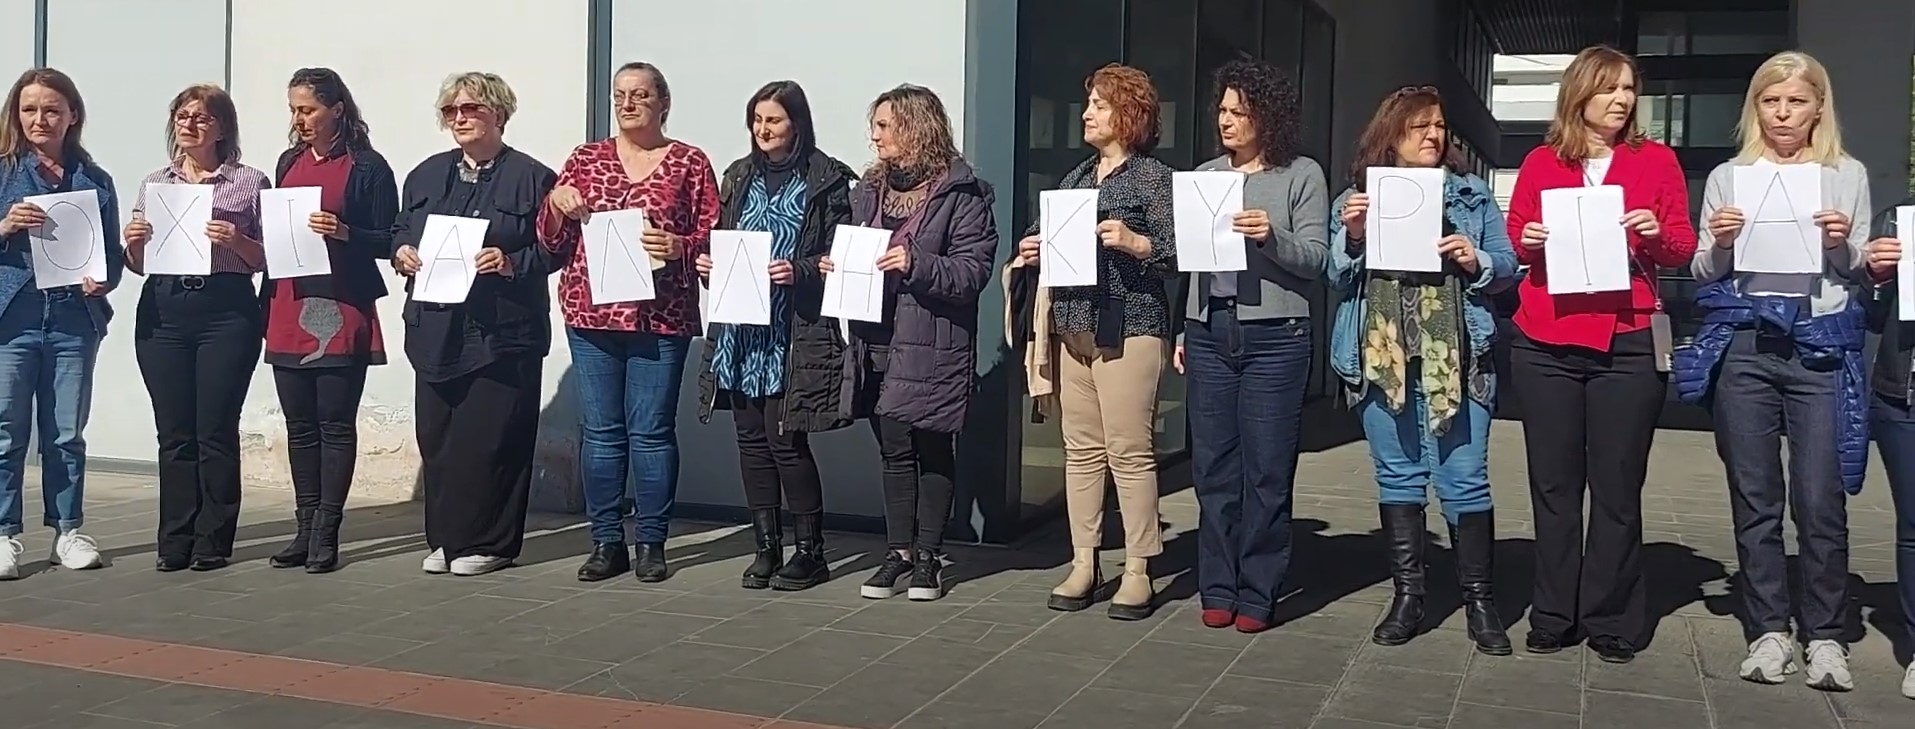 Θεσσαλονίκη: Διαμαρτυρία των εργαζομένων στην Περιφέρεια Κ. Μακεδονίας για τις γυναικοκτονίες